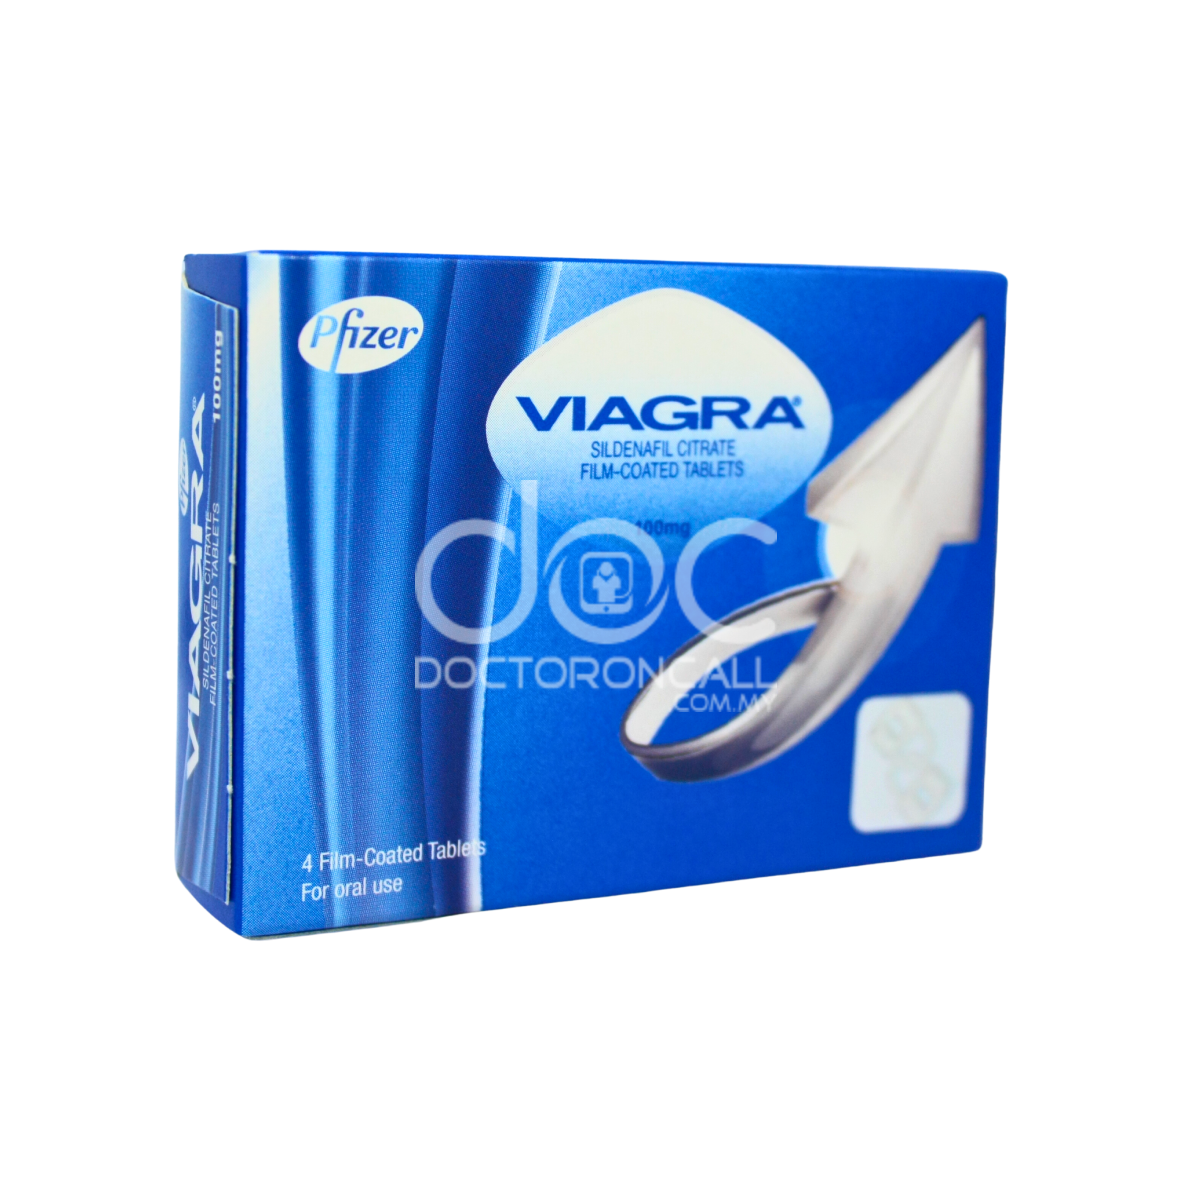 Viagra 100mg Tablet-Mati pucuk ada ka ubat dan penawar untuk suami saya